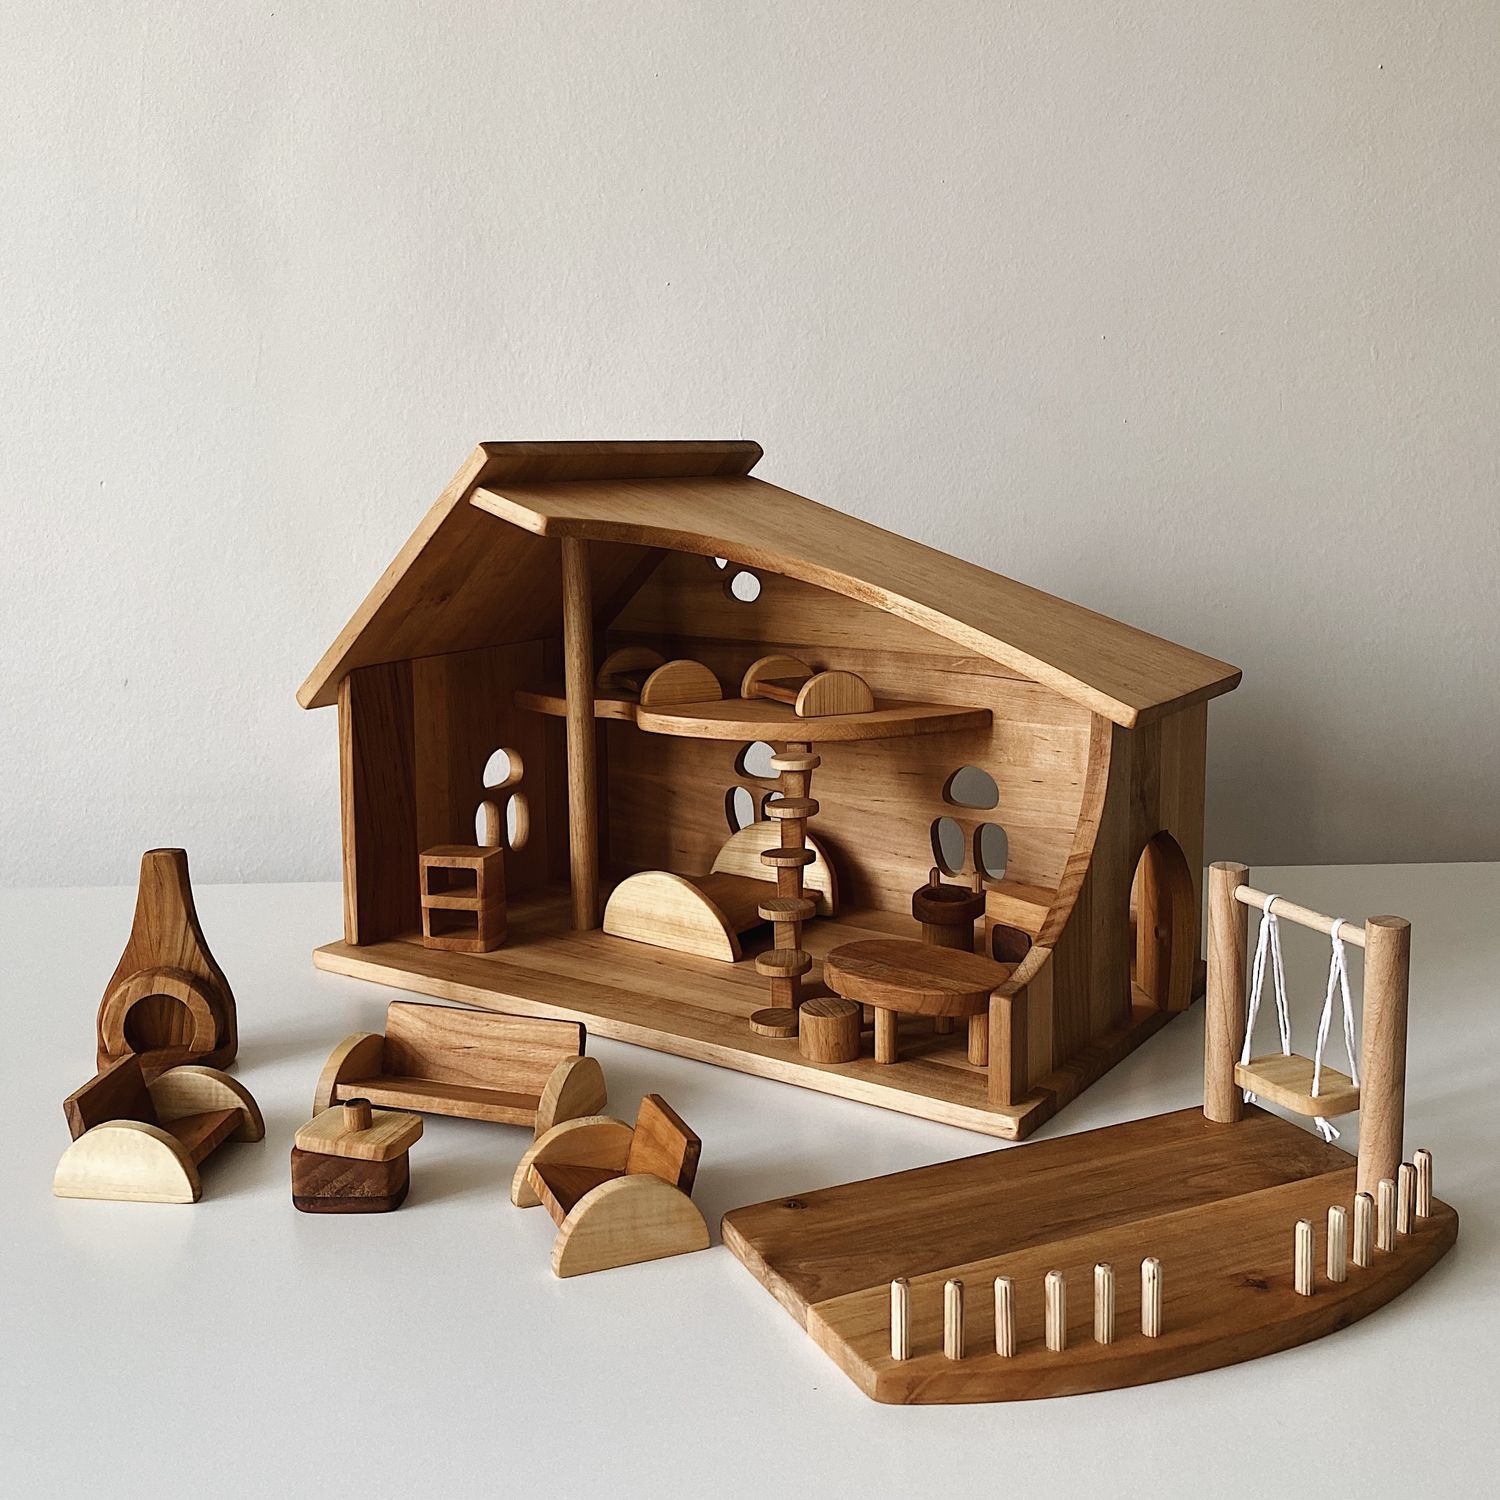 Деревянный кукольный домик с мебелью, Кукольные домики, Тула,  Фото №1